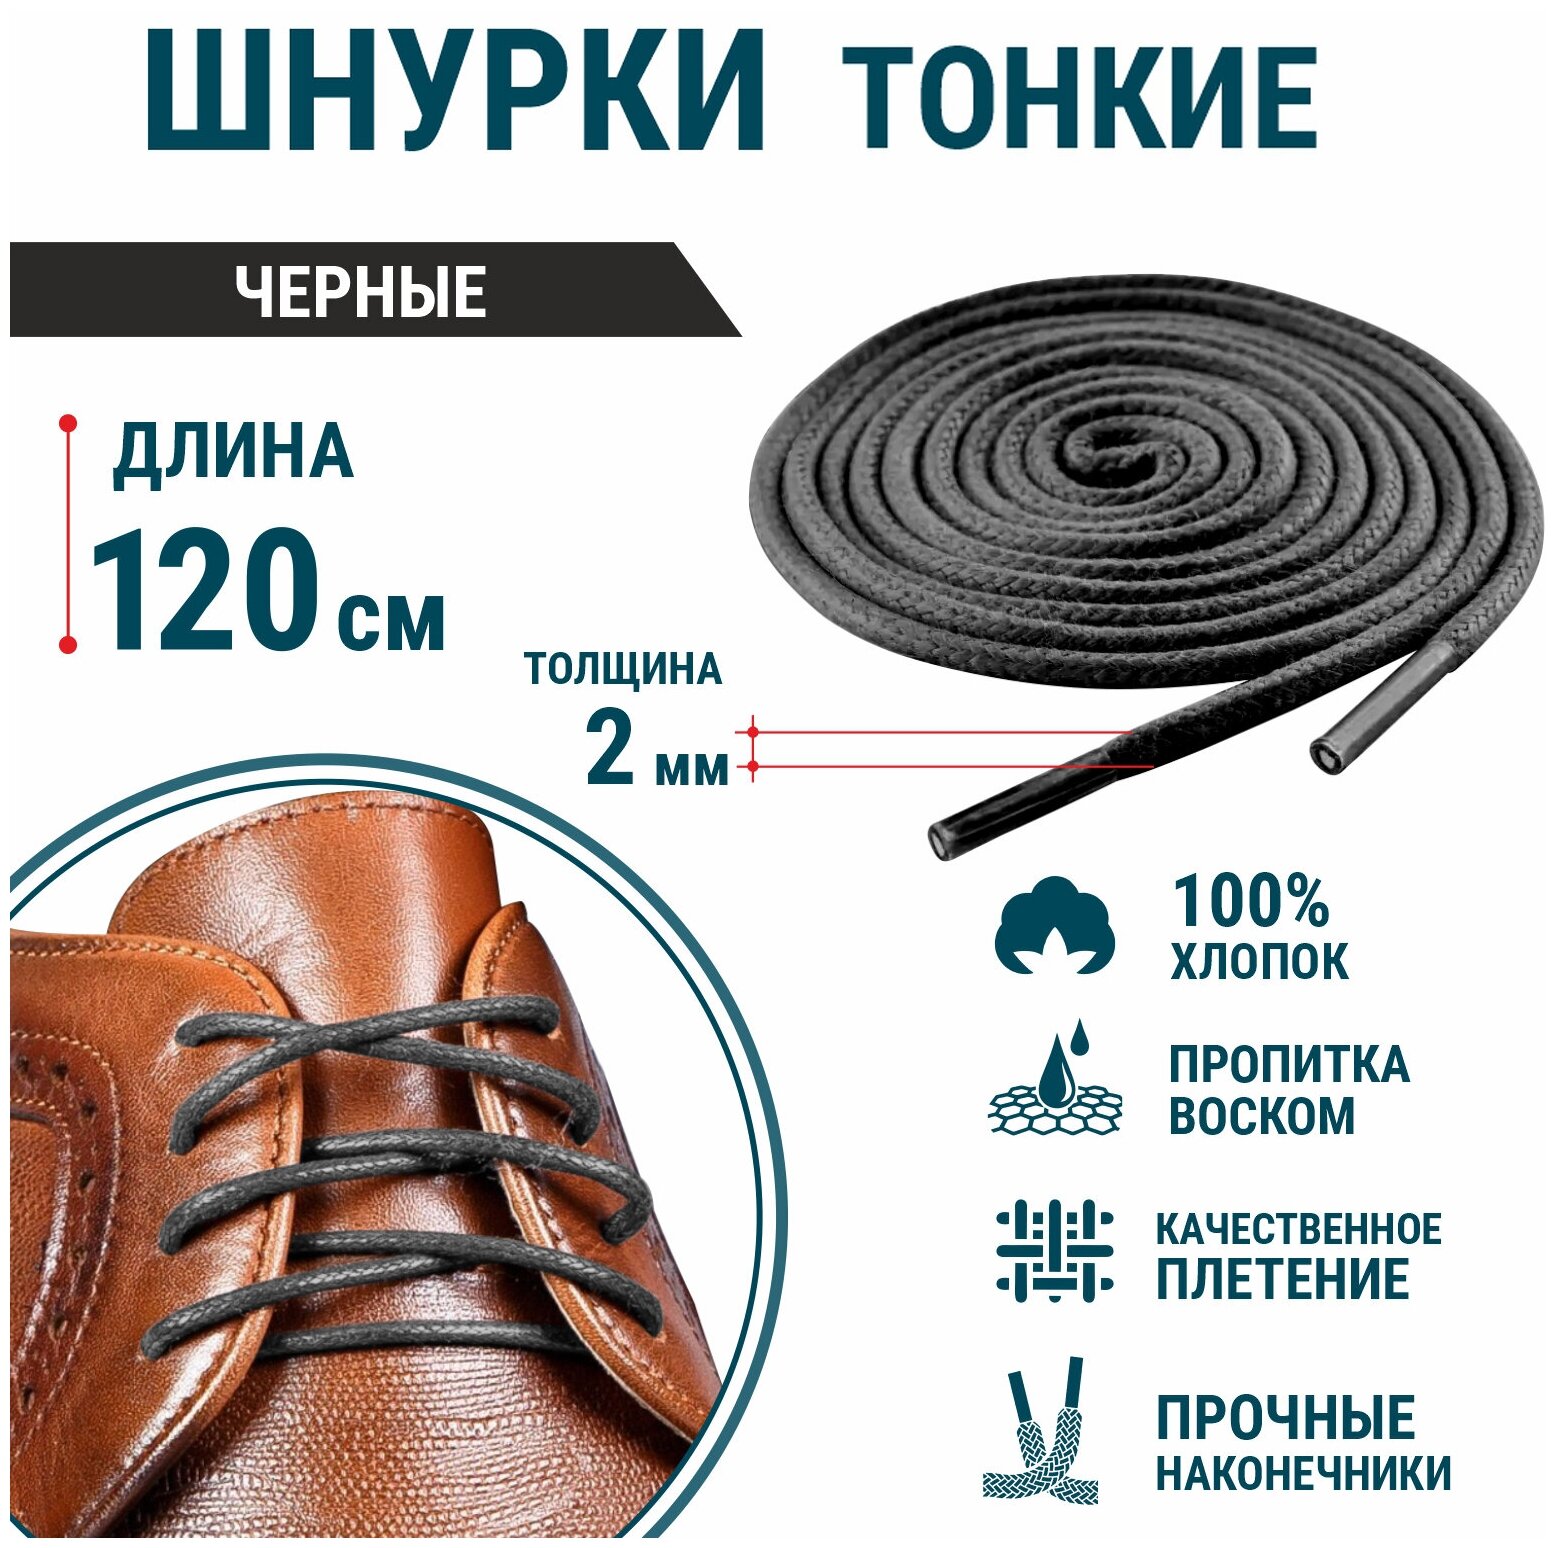 Шнурки для обуви GUIN Черные Тонкие Круглые 120 см, прочные шнурки для кроссовок, кед, ботинок, берцев с пропиткой, вощенные, универсальные